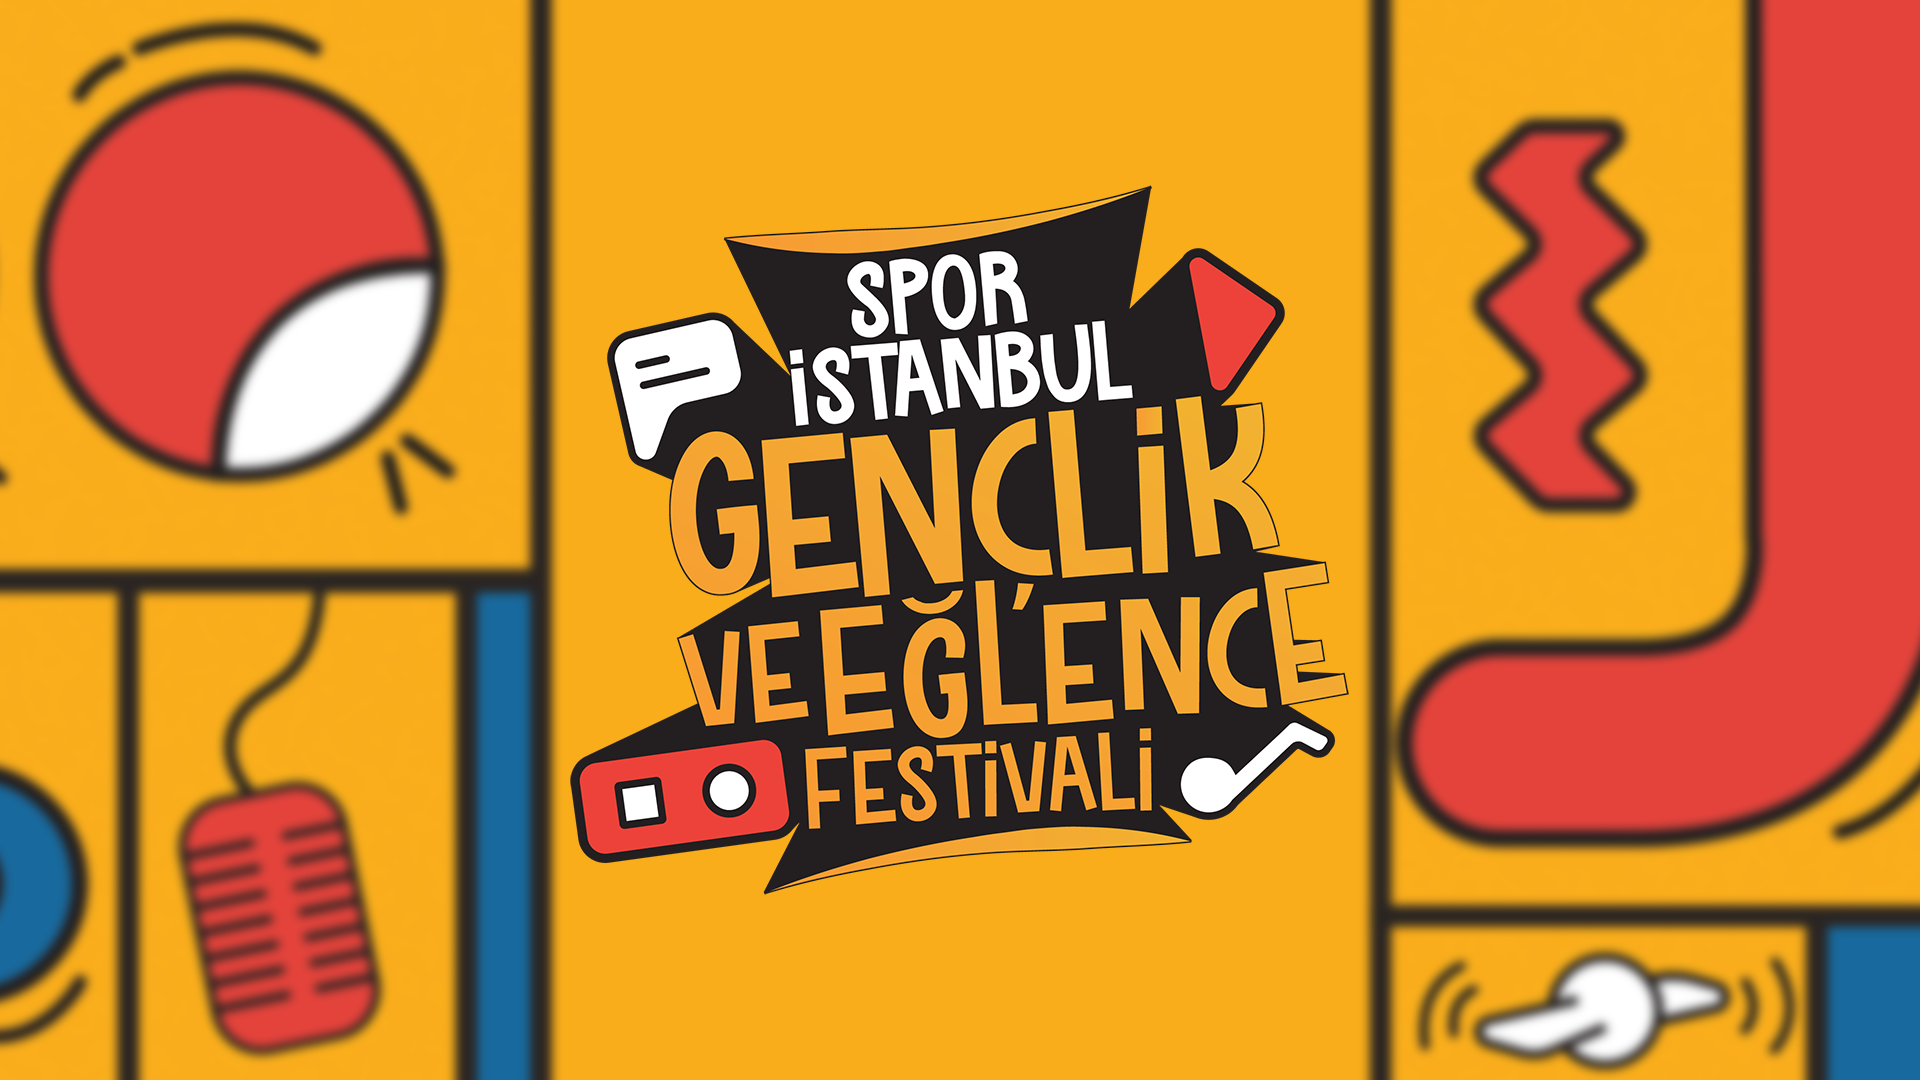 Spor İstanbul Gençlik ve Eğlence Festivali Başlıyor!